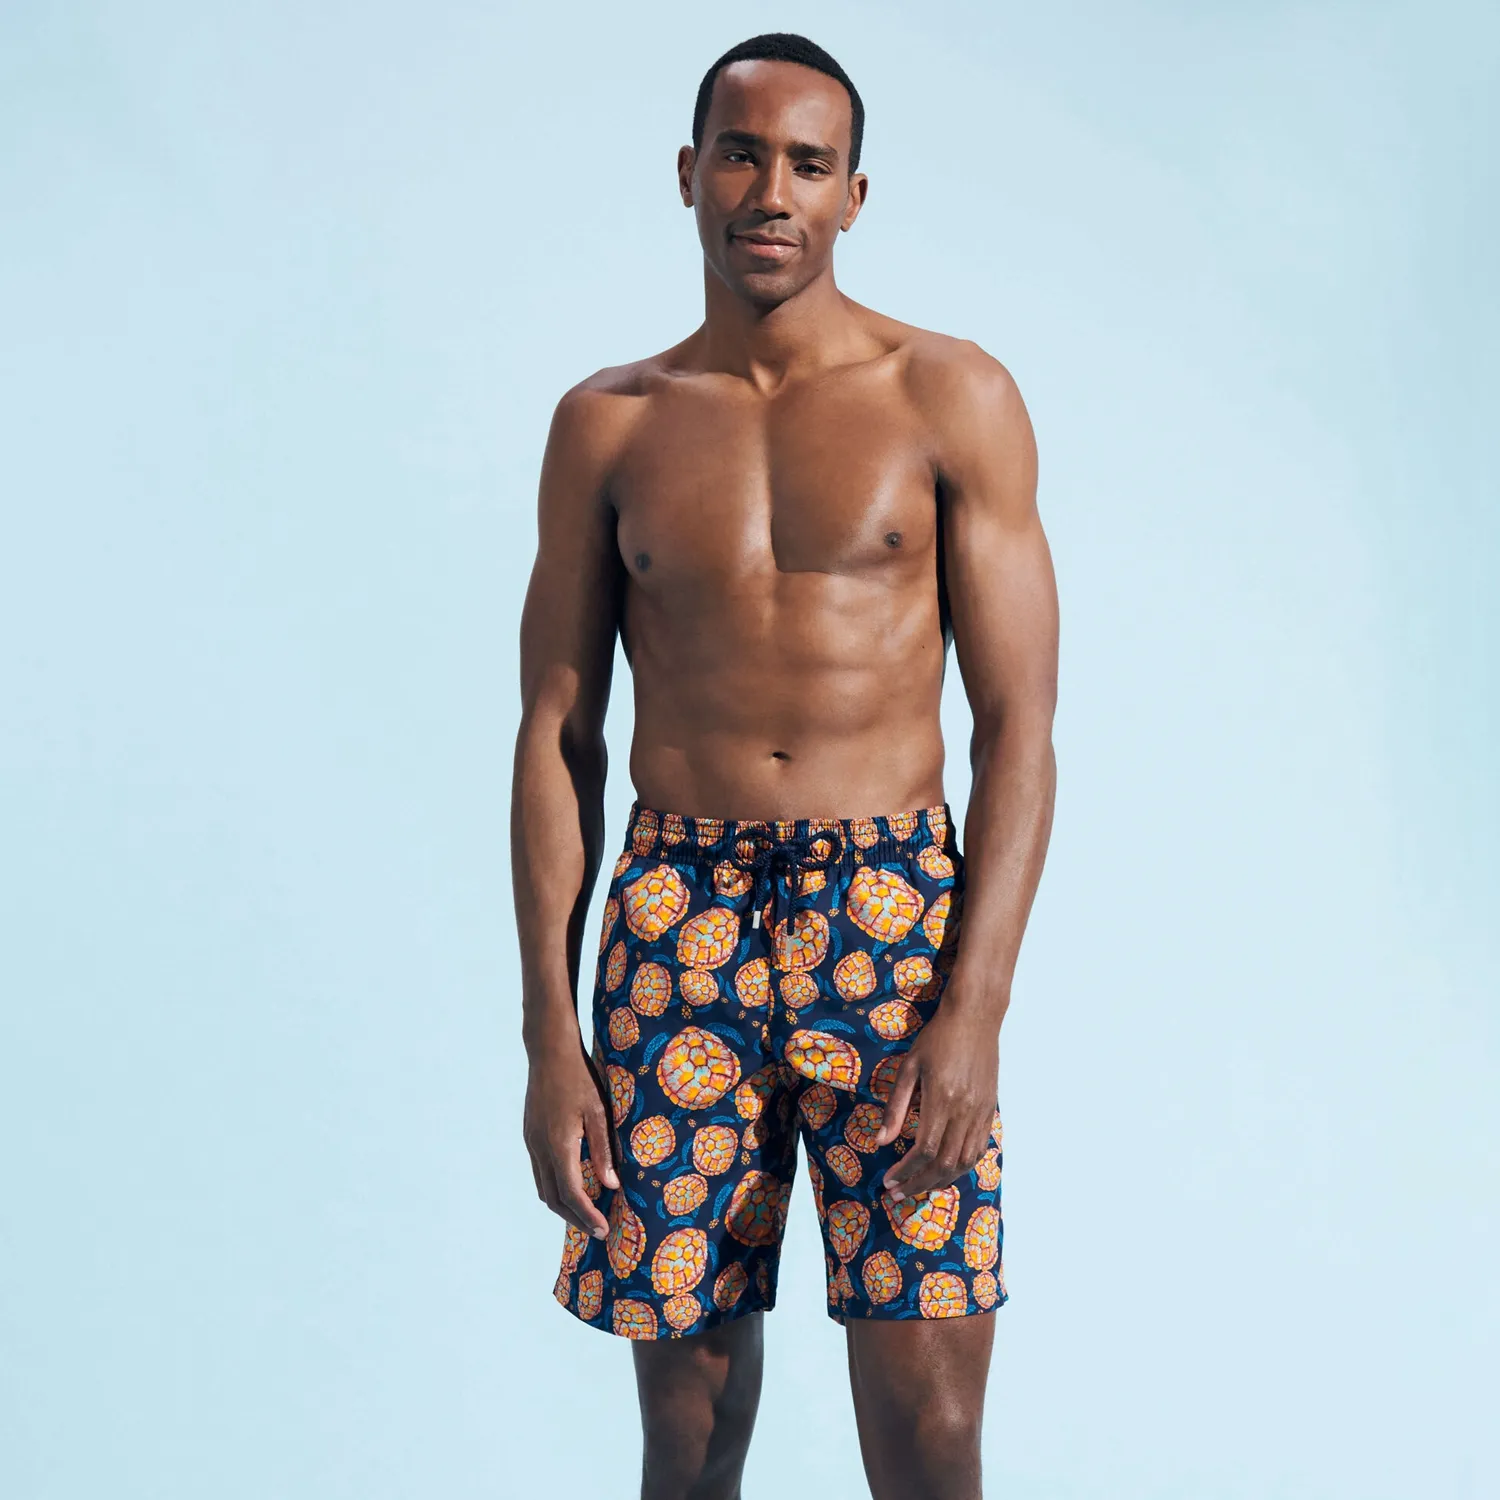 Vilebre Erkek Şortları Bermuda Pantaloncini Boardshorts Erkekler Yüzmek Şort Tüketim Multioorores Moltyors Menhs Surfwear Bermudas Plajı Kısa Kaplumbağalar Yaz 89847